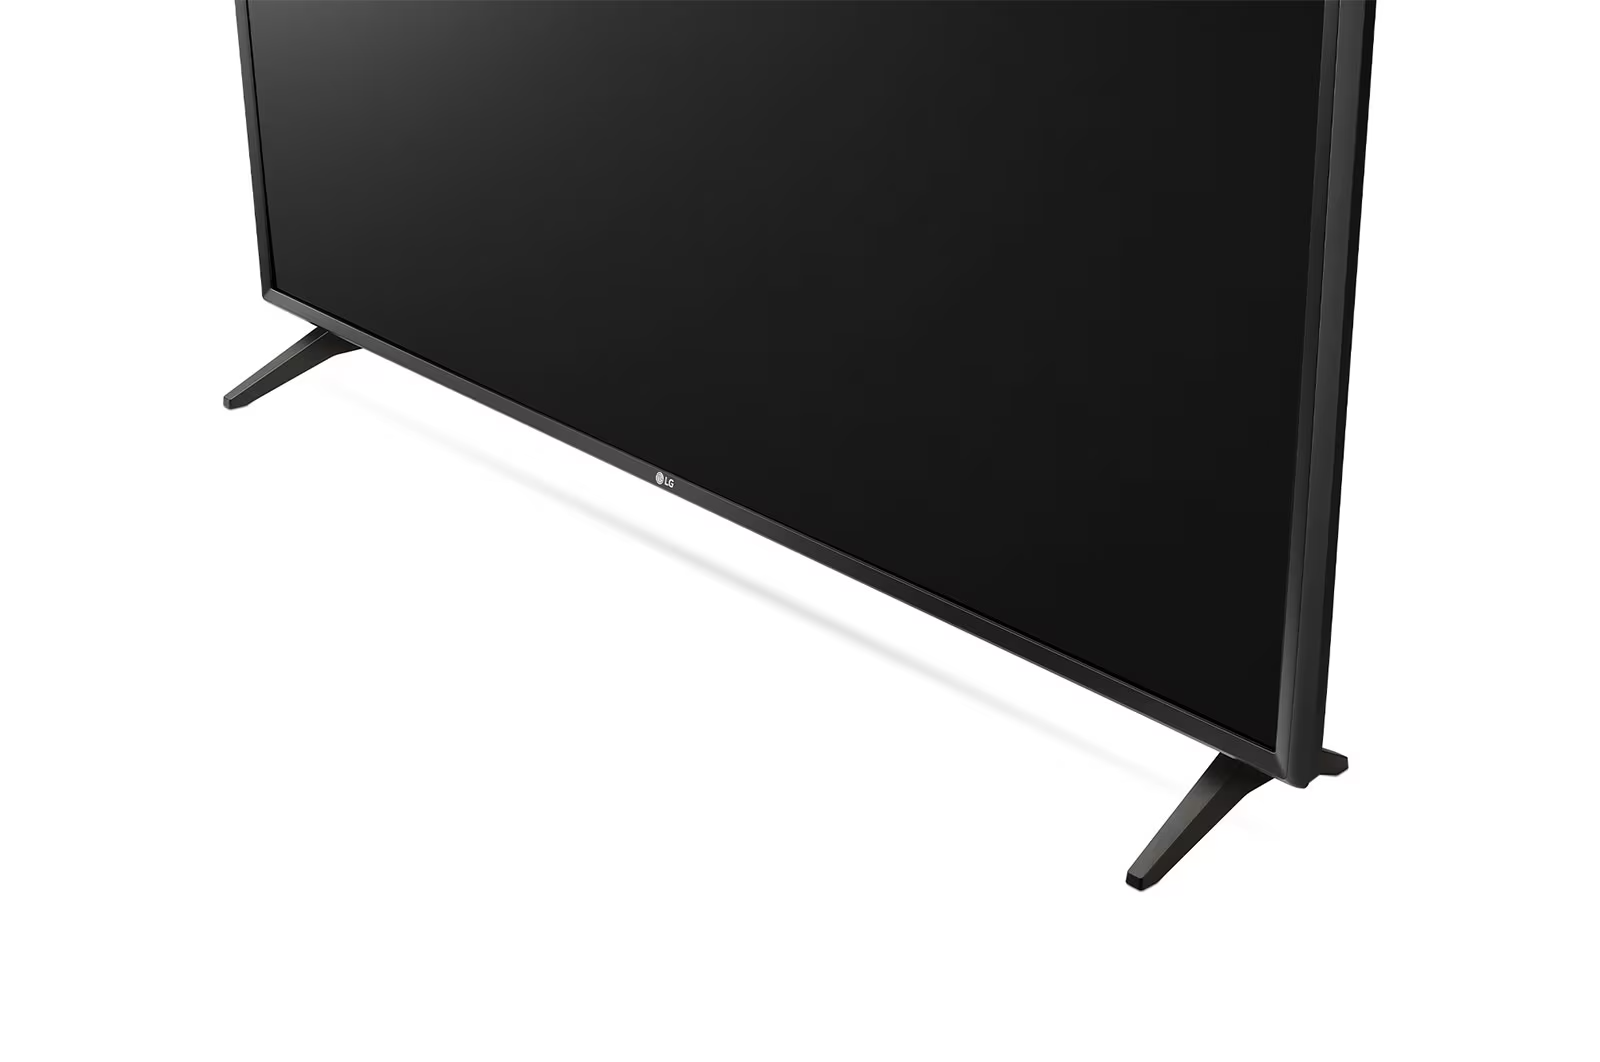 LG LED TV LQ57 32 (81.28 cm) AI Smart HD TV | WebOS | ThinQ AI | Active HDR 32LQ570BPSA - ATC Electronics